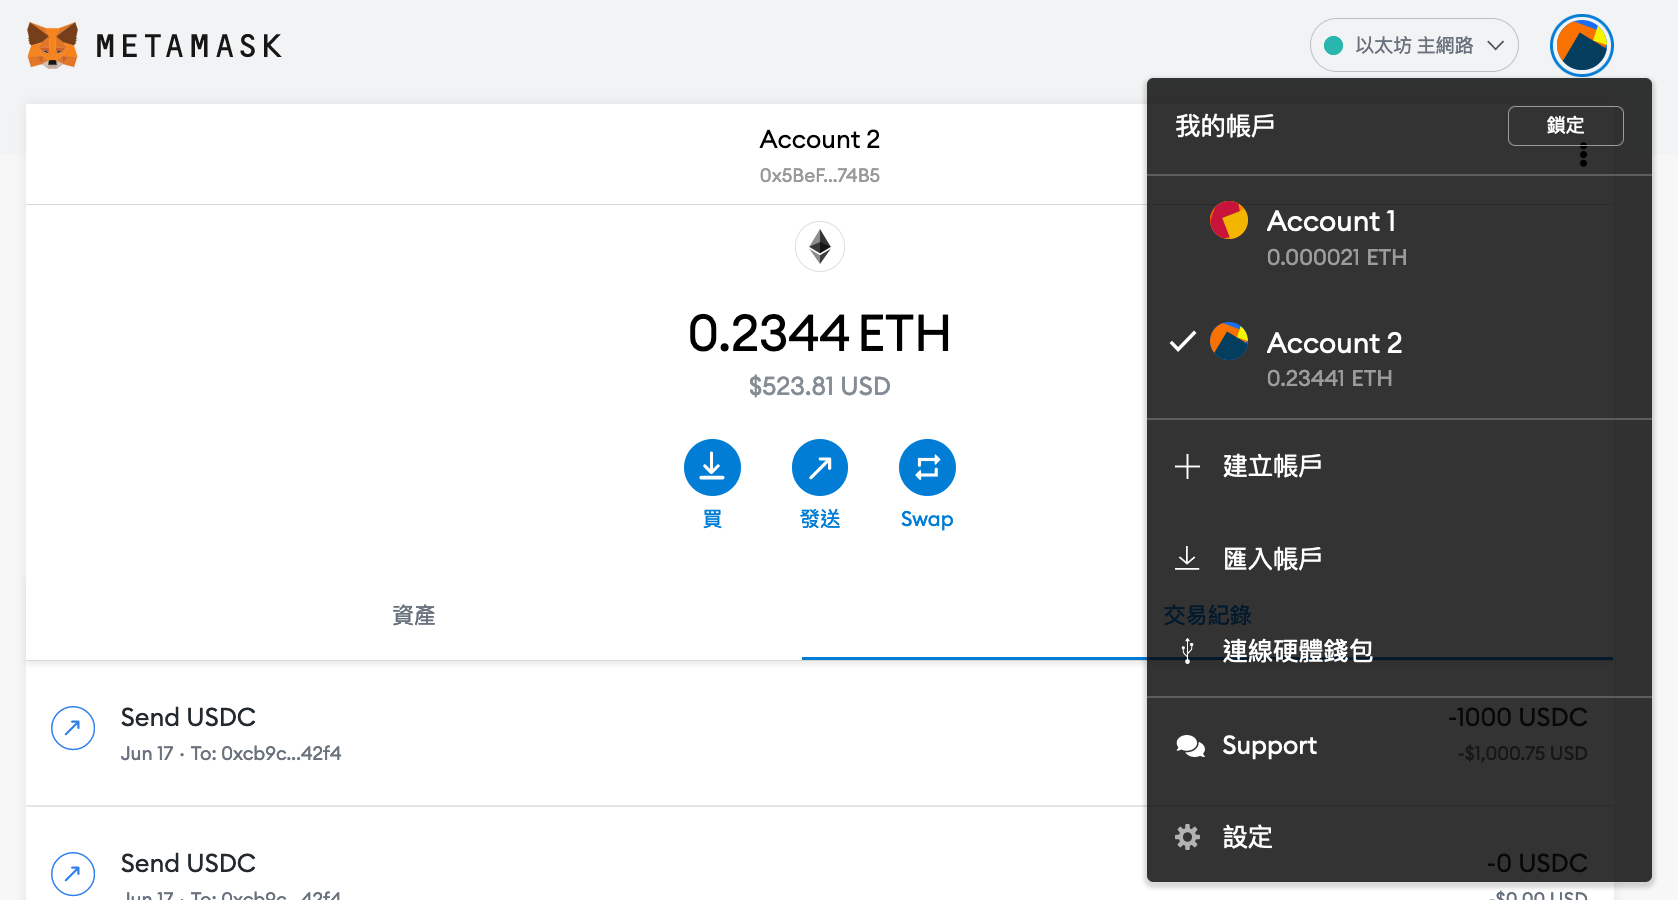 加密貨幣錢包-推薦MetaMask虛擬貨幣狐狸錢包台灣申請地址教學!什麼是冷錢包熱錢包?